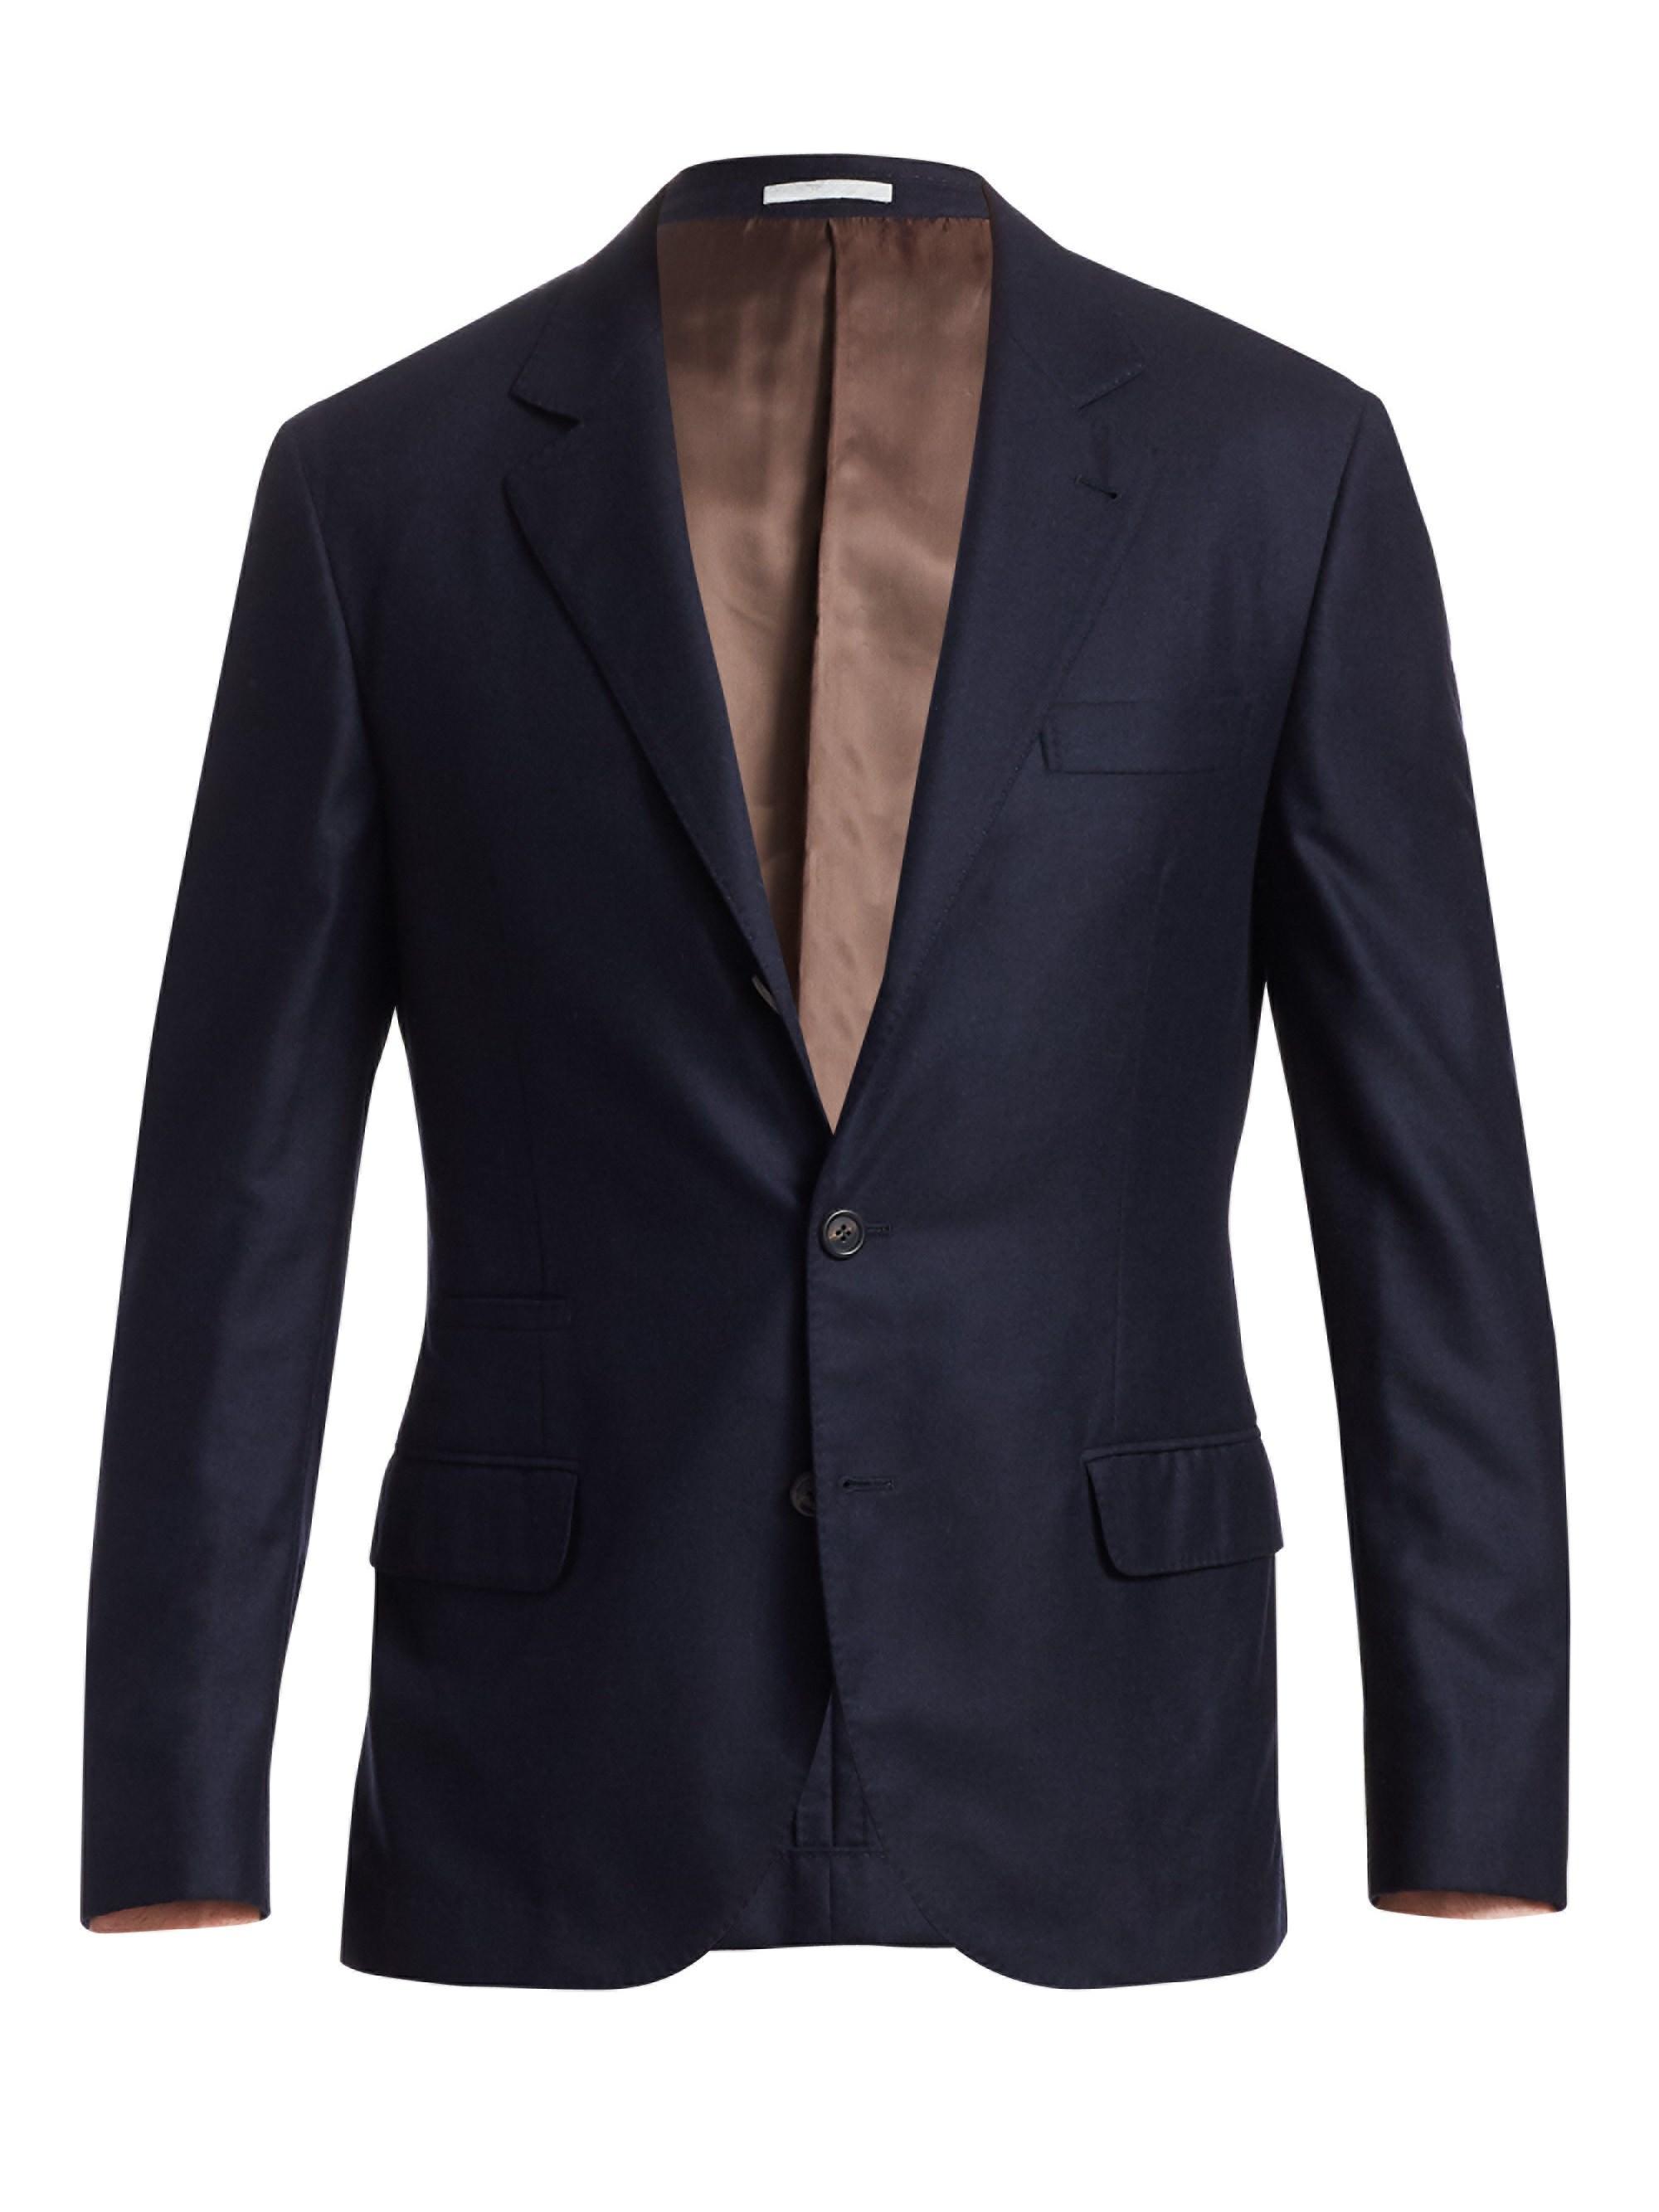 Brunello Cucinelli Cashmere & Silk Blazer in Blue for Men - Lyst